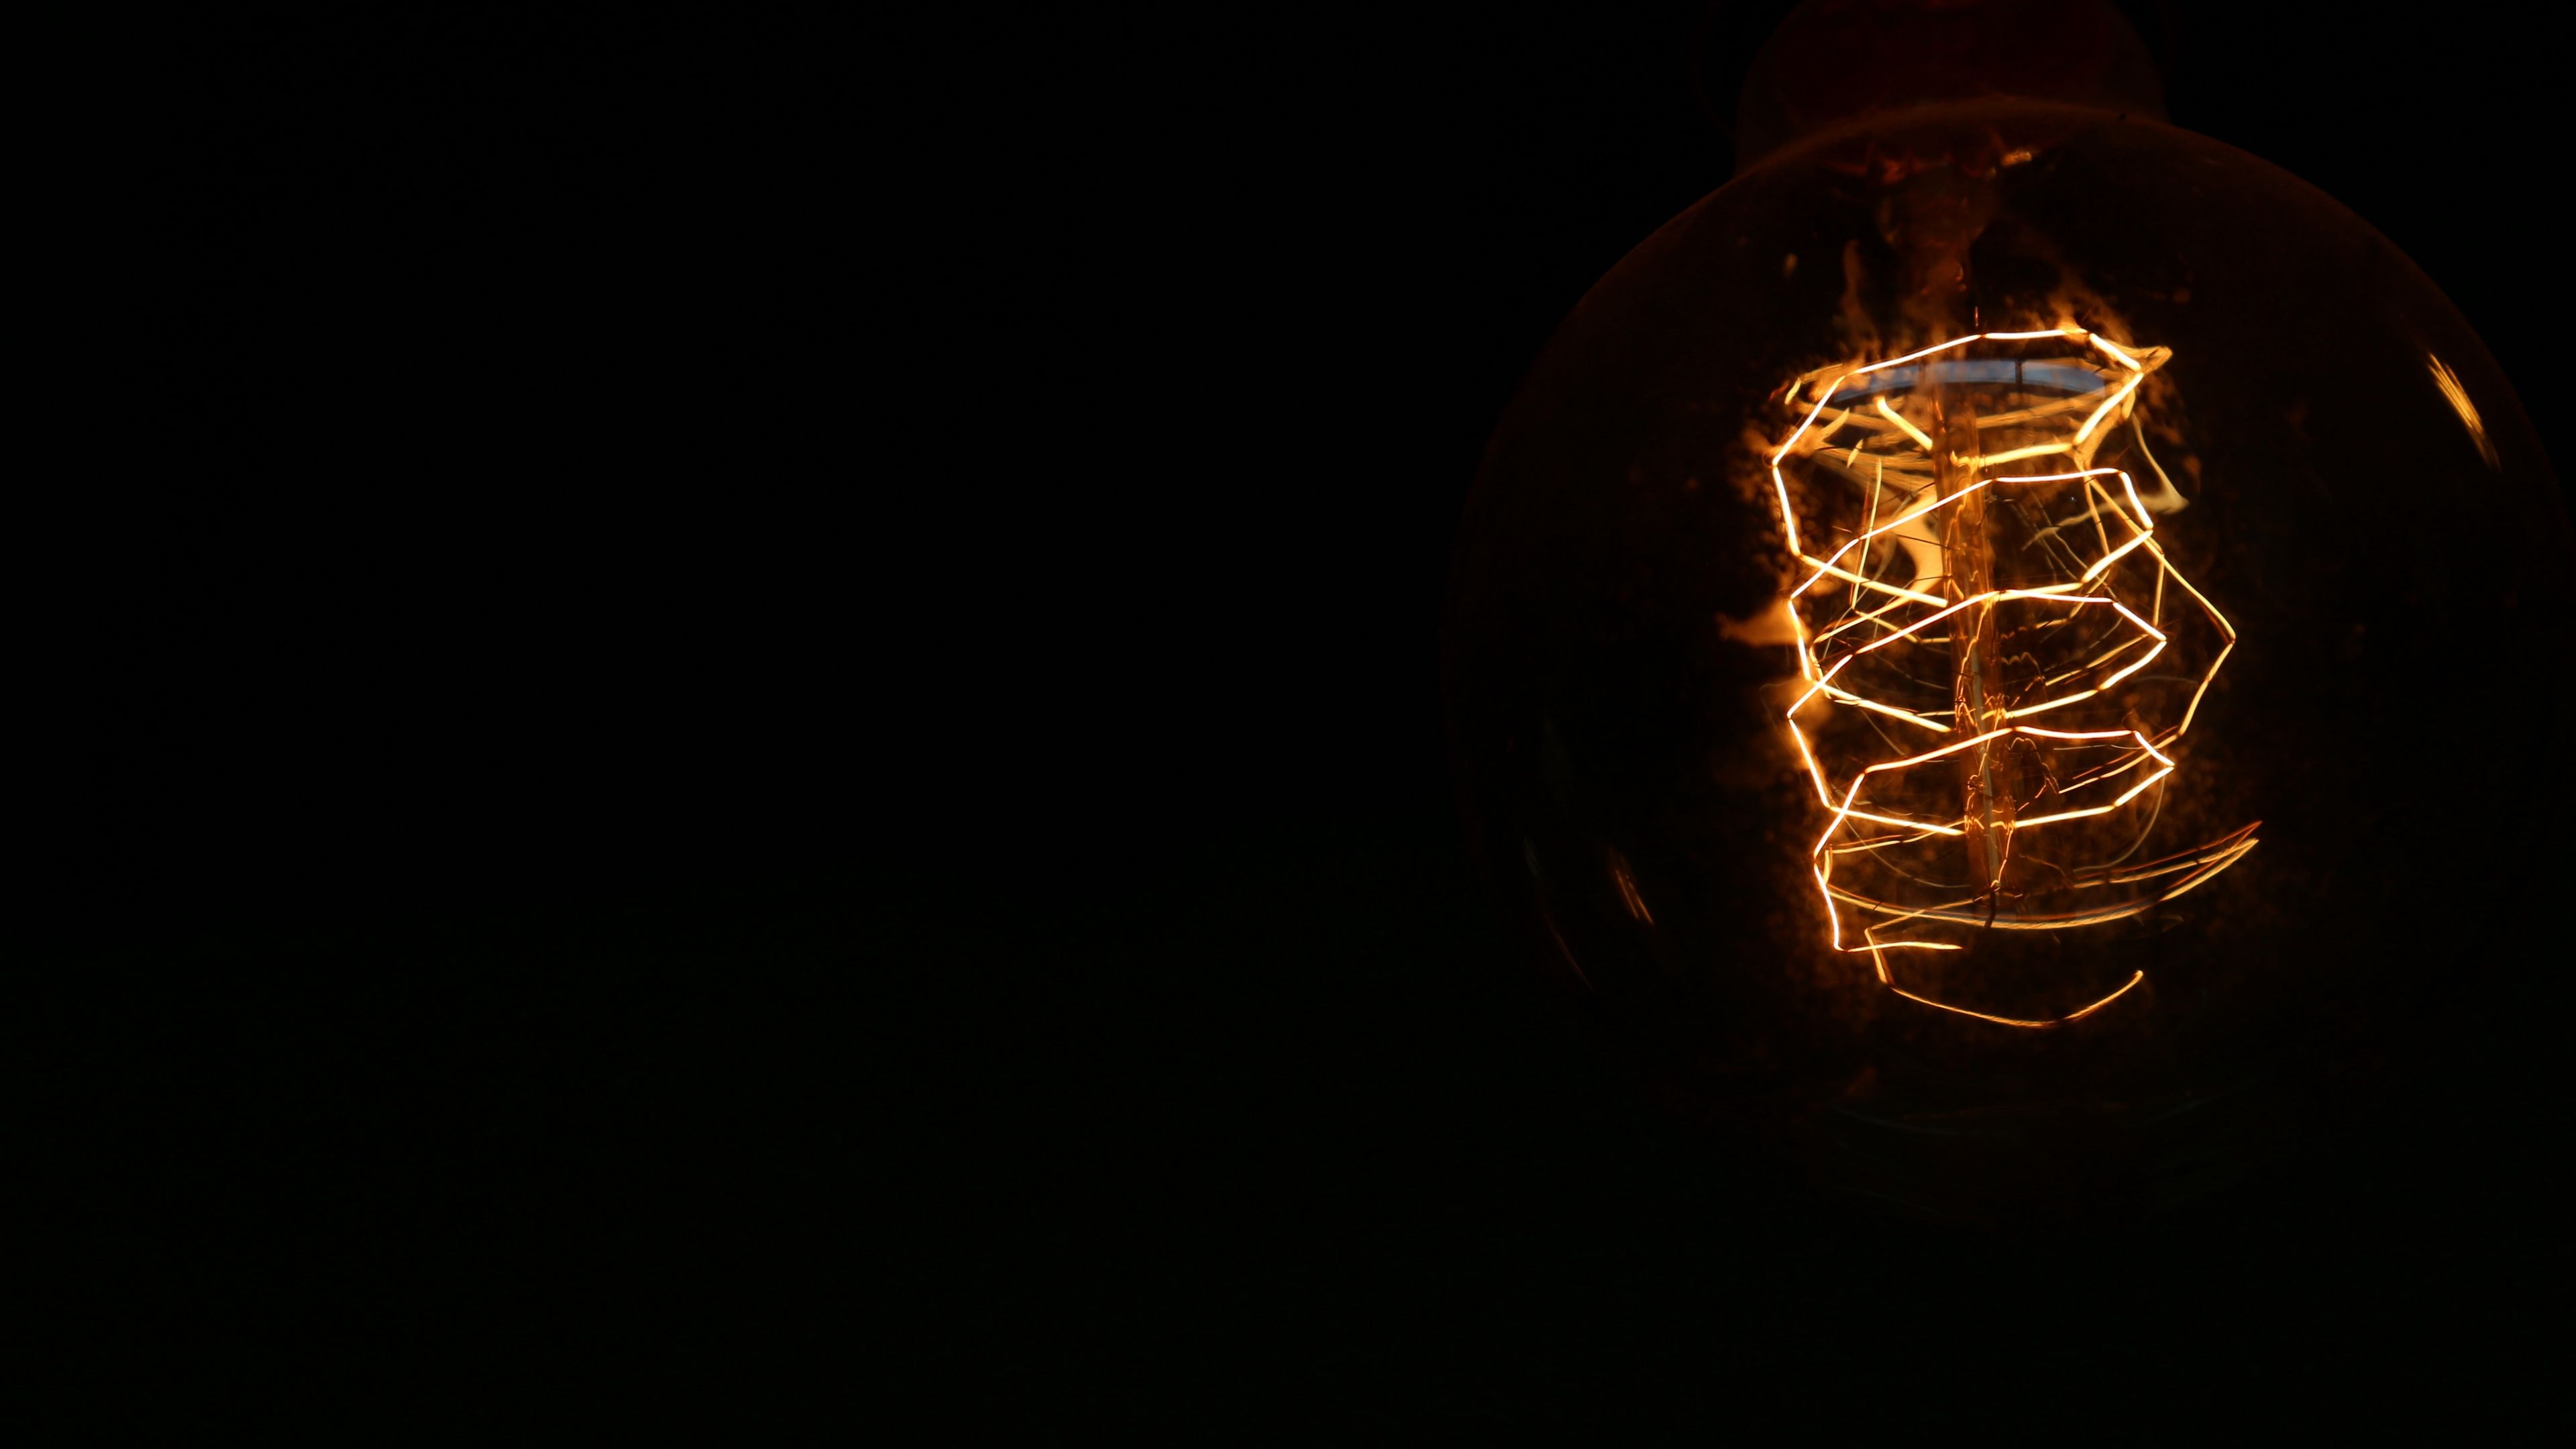 Light Bulb Electricity Spiral Dark 3840x2160 UHD Wallpaper. Walldump HD and UHD Wallpaper